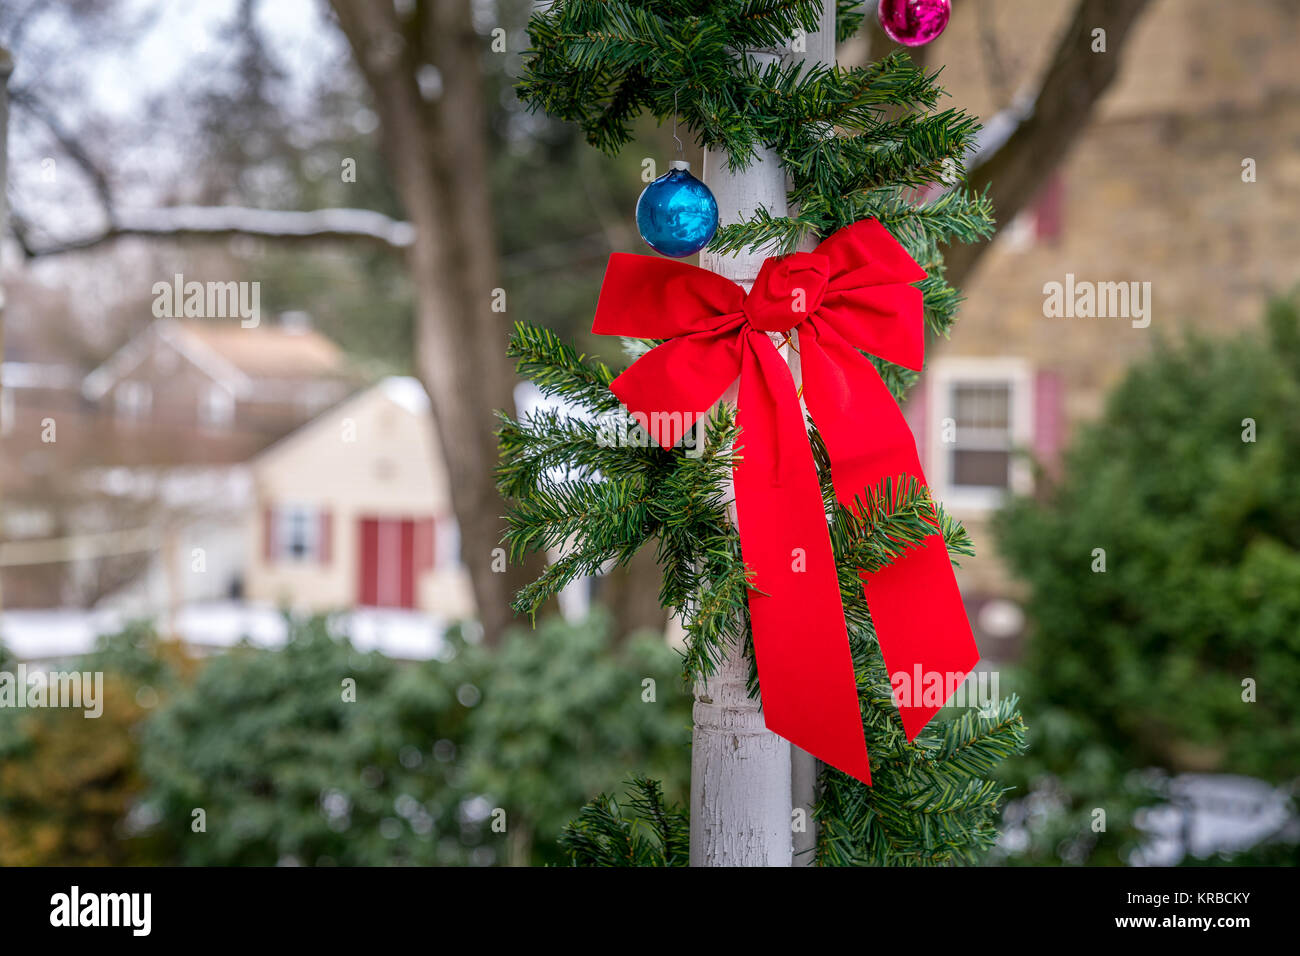 Rad noeud papillon, des ornements de Noël et décoration evergreen ornent les colonnes de bois. Célébration traditionnelle, des fêtes de Noël et d'hiver Banque D'Images